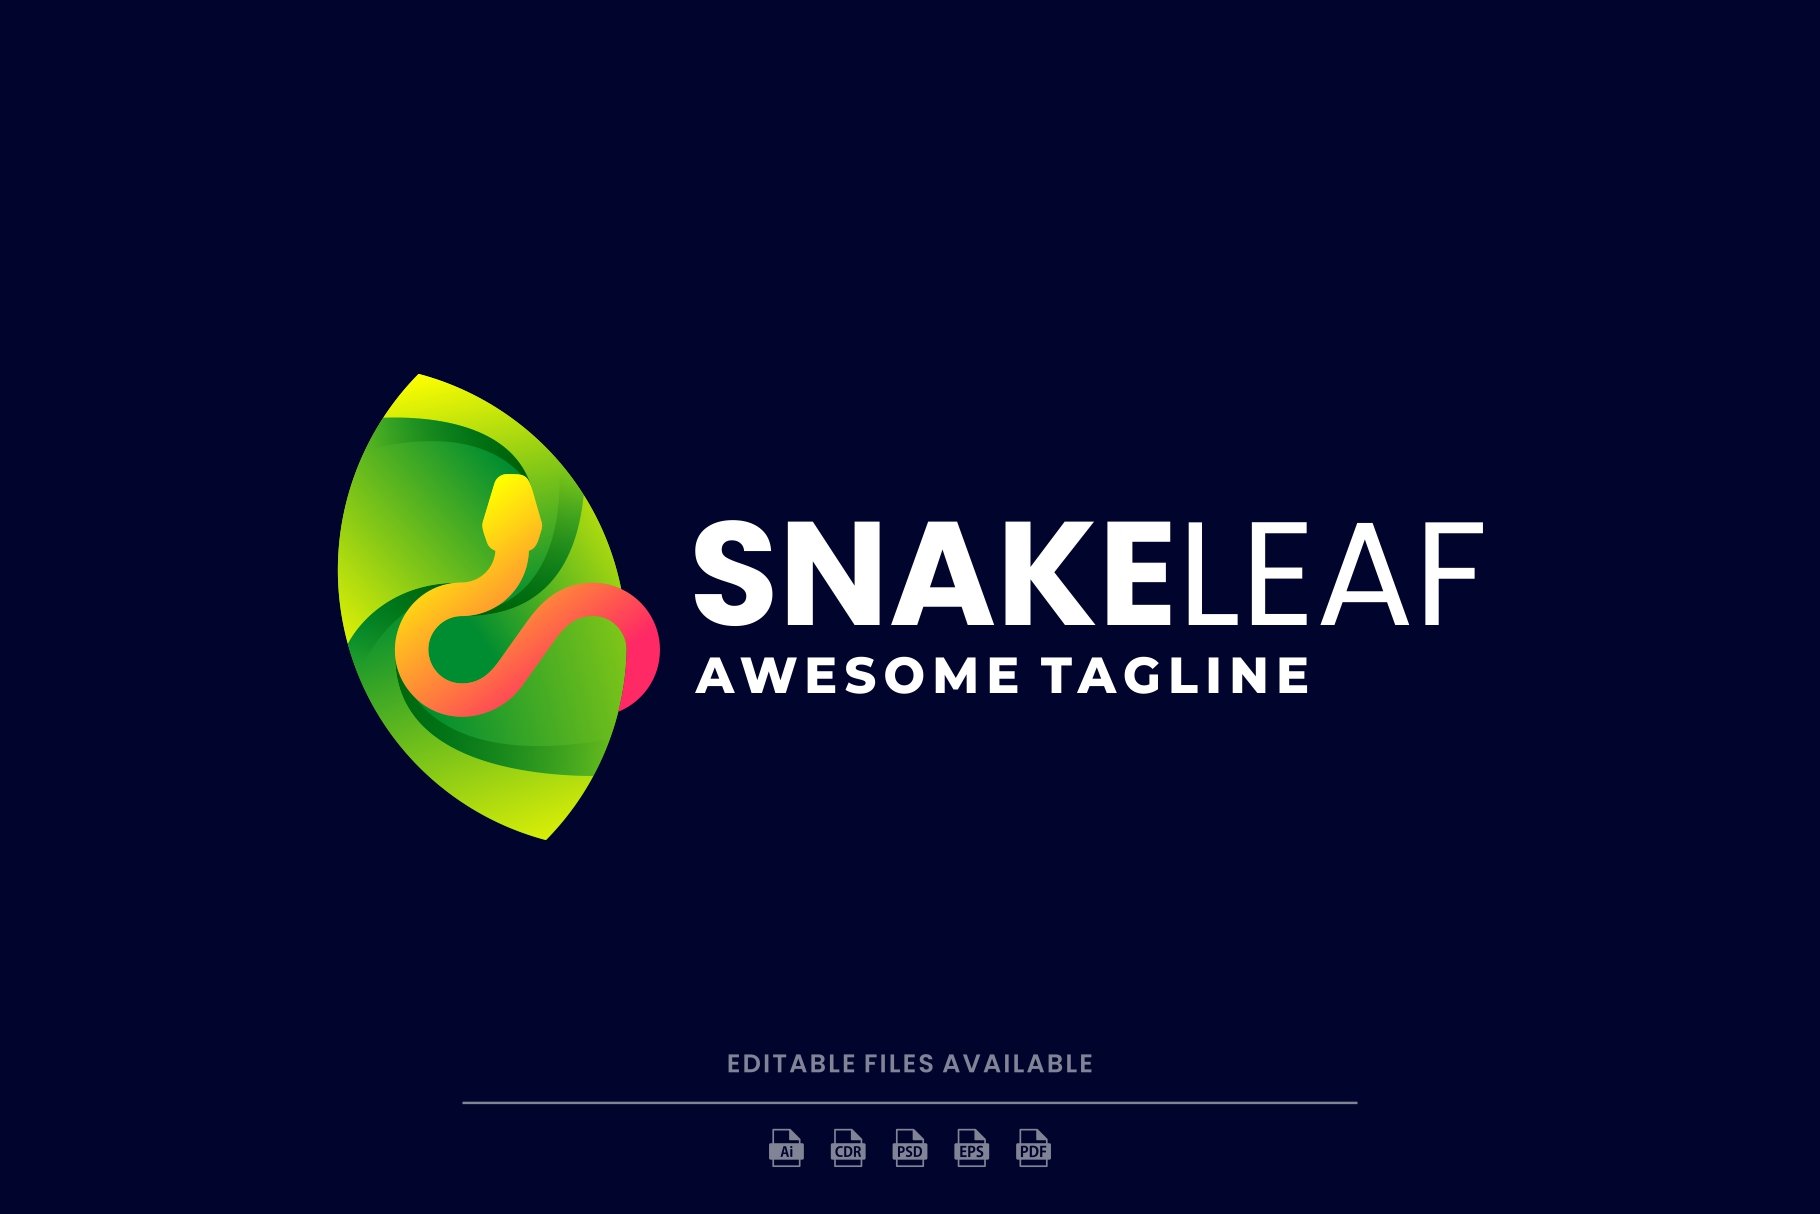 Snake Leaf Colorful Logo cover image.